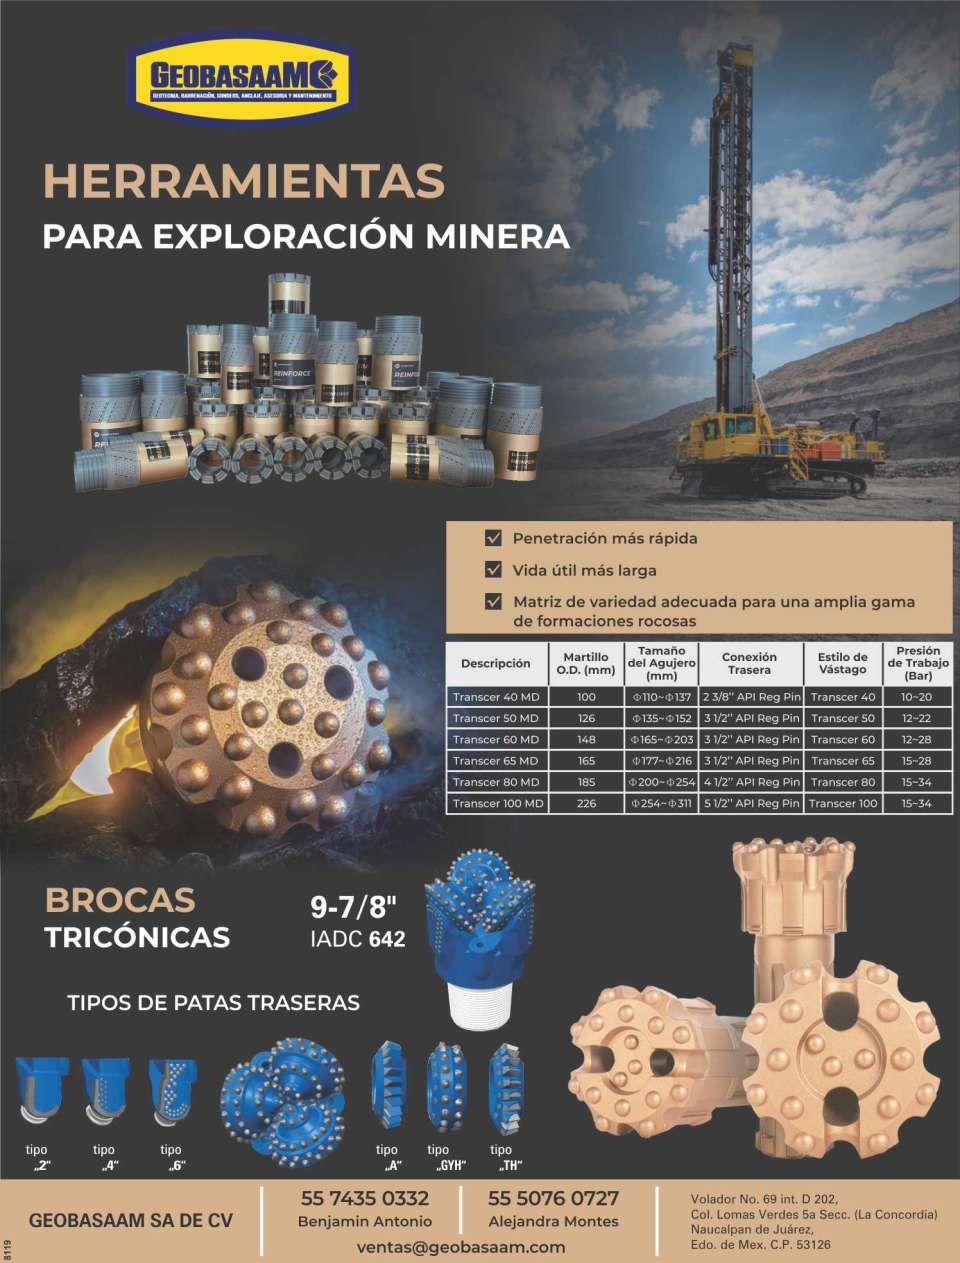 Herramientas para Exploracion Minera, Brocas Triconicas IADC 642. Herramienta de Perforacion, Geotecnia, Barrenacion, Sondeos, Anclaje, Asesoria y Mantenimiento.